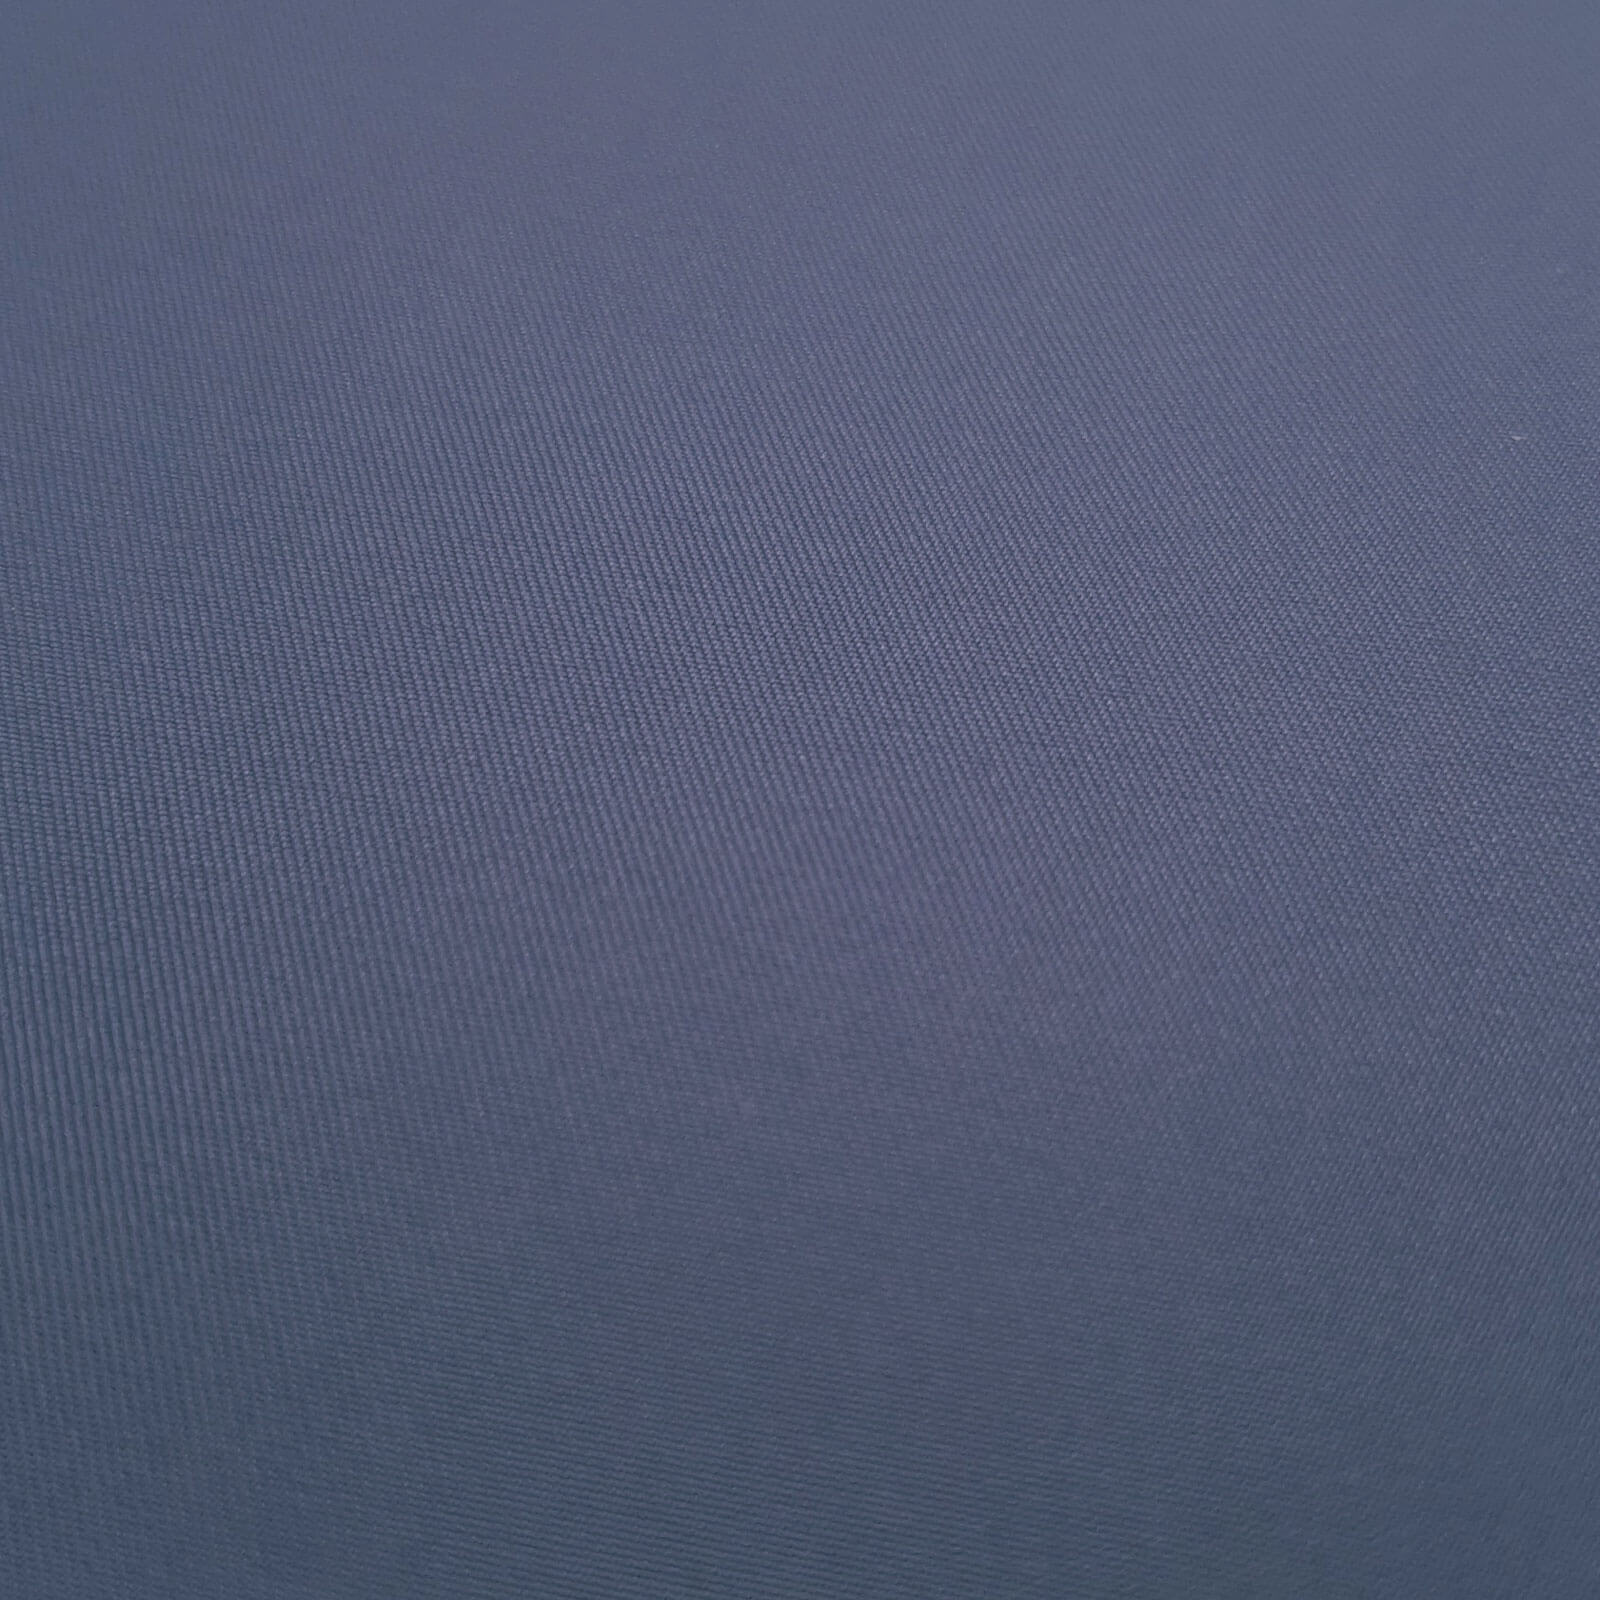 Laurena - Tecido exterior laminado com membrana climática - Azul médio